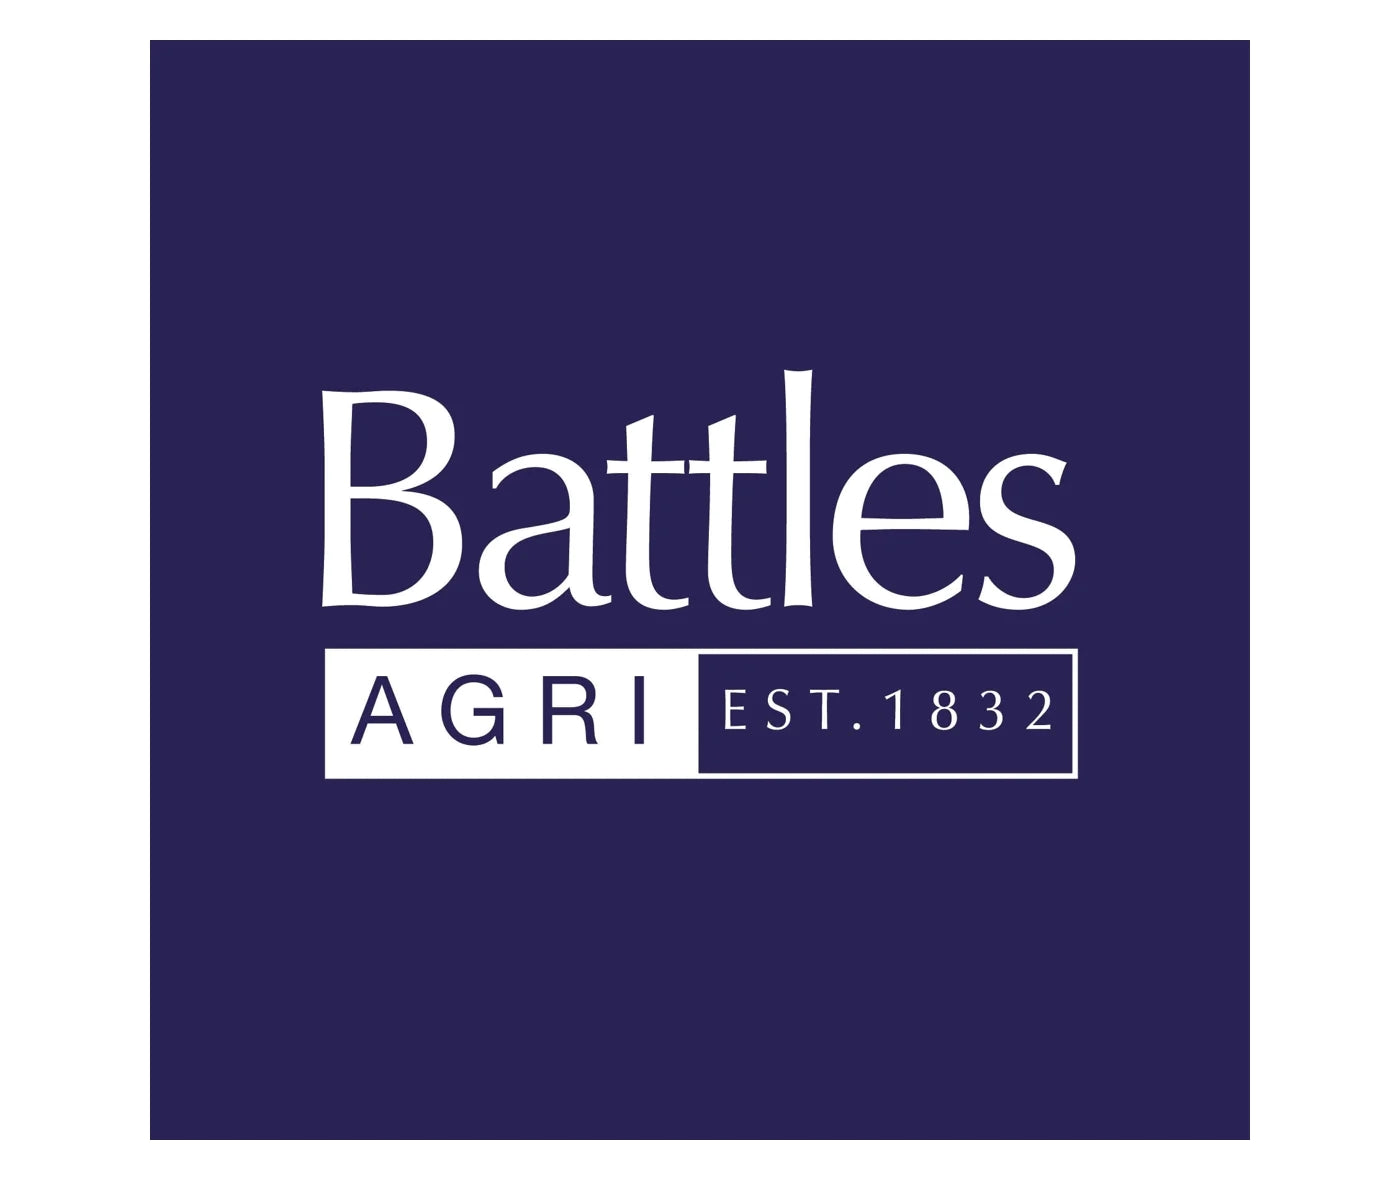 Battles - Poultry Drink 500ml - Buy Online SPR Centre UK